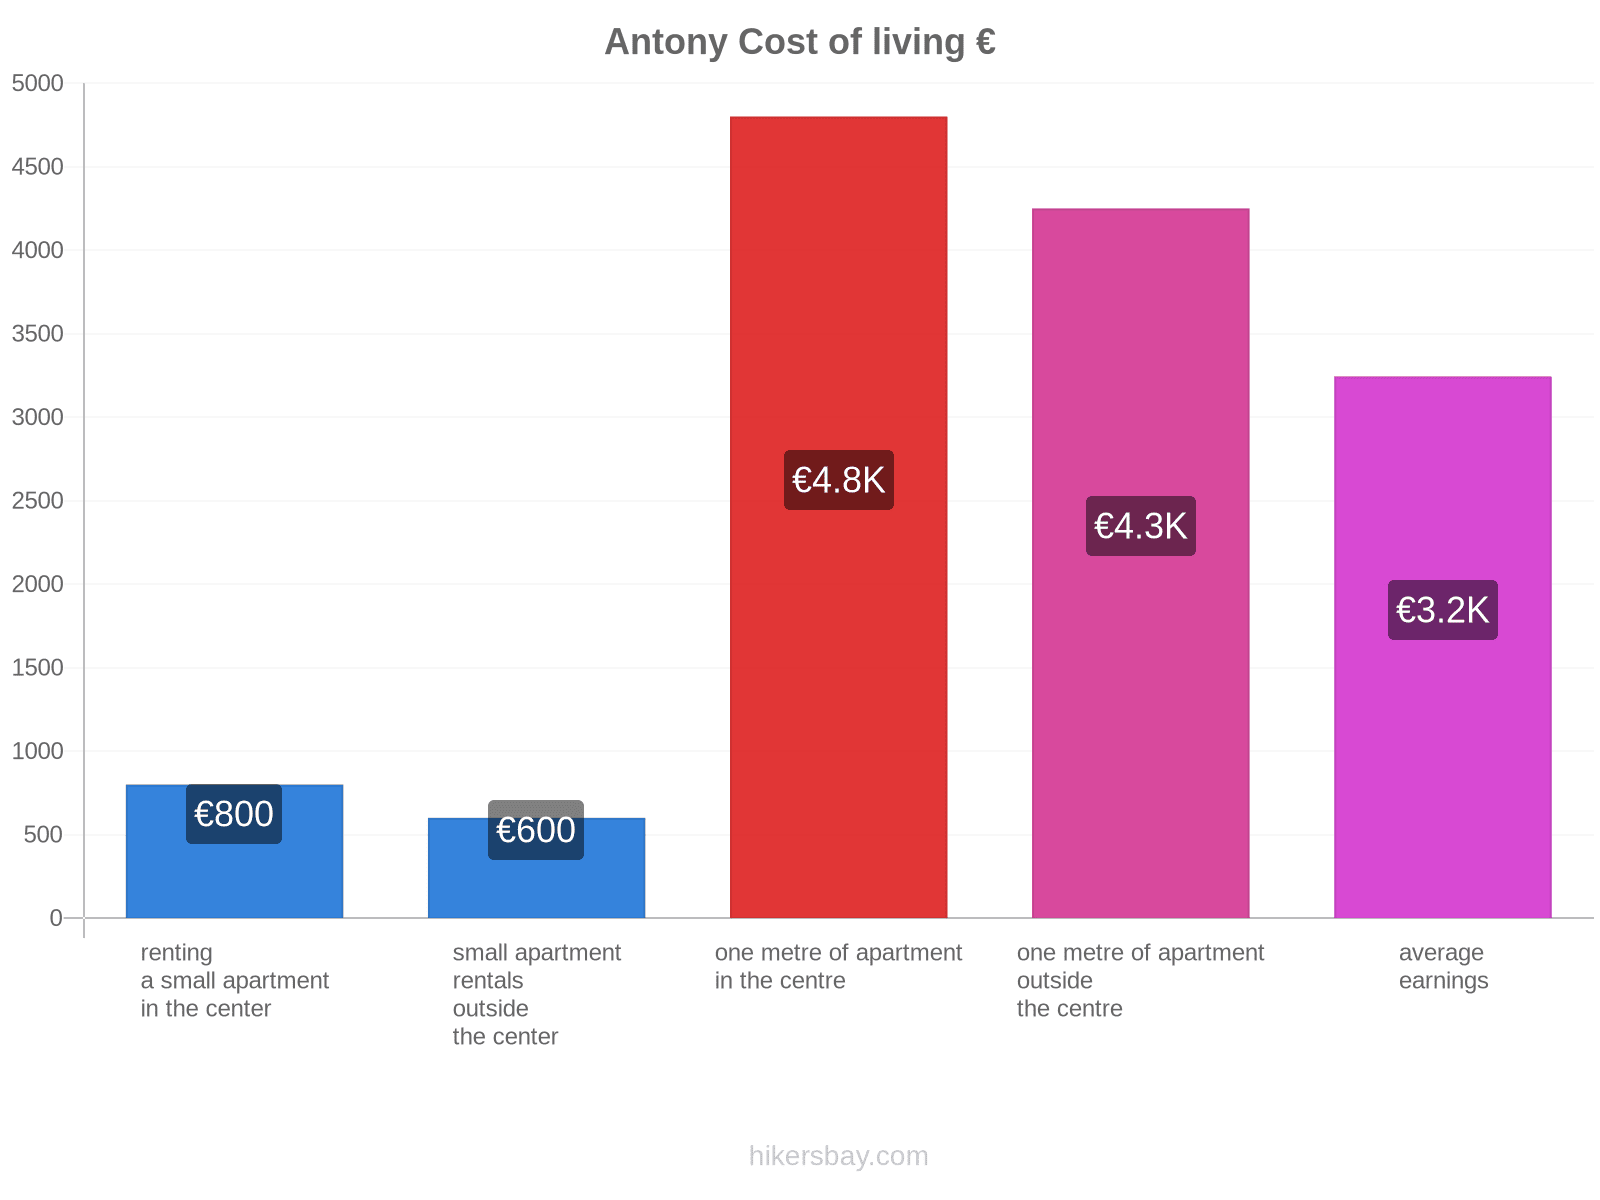 Antony cost of living hikersbay.com